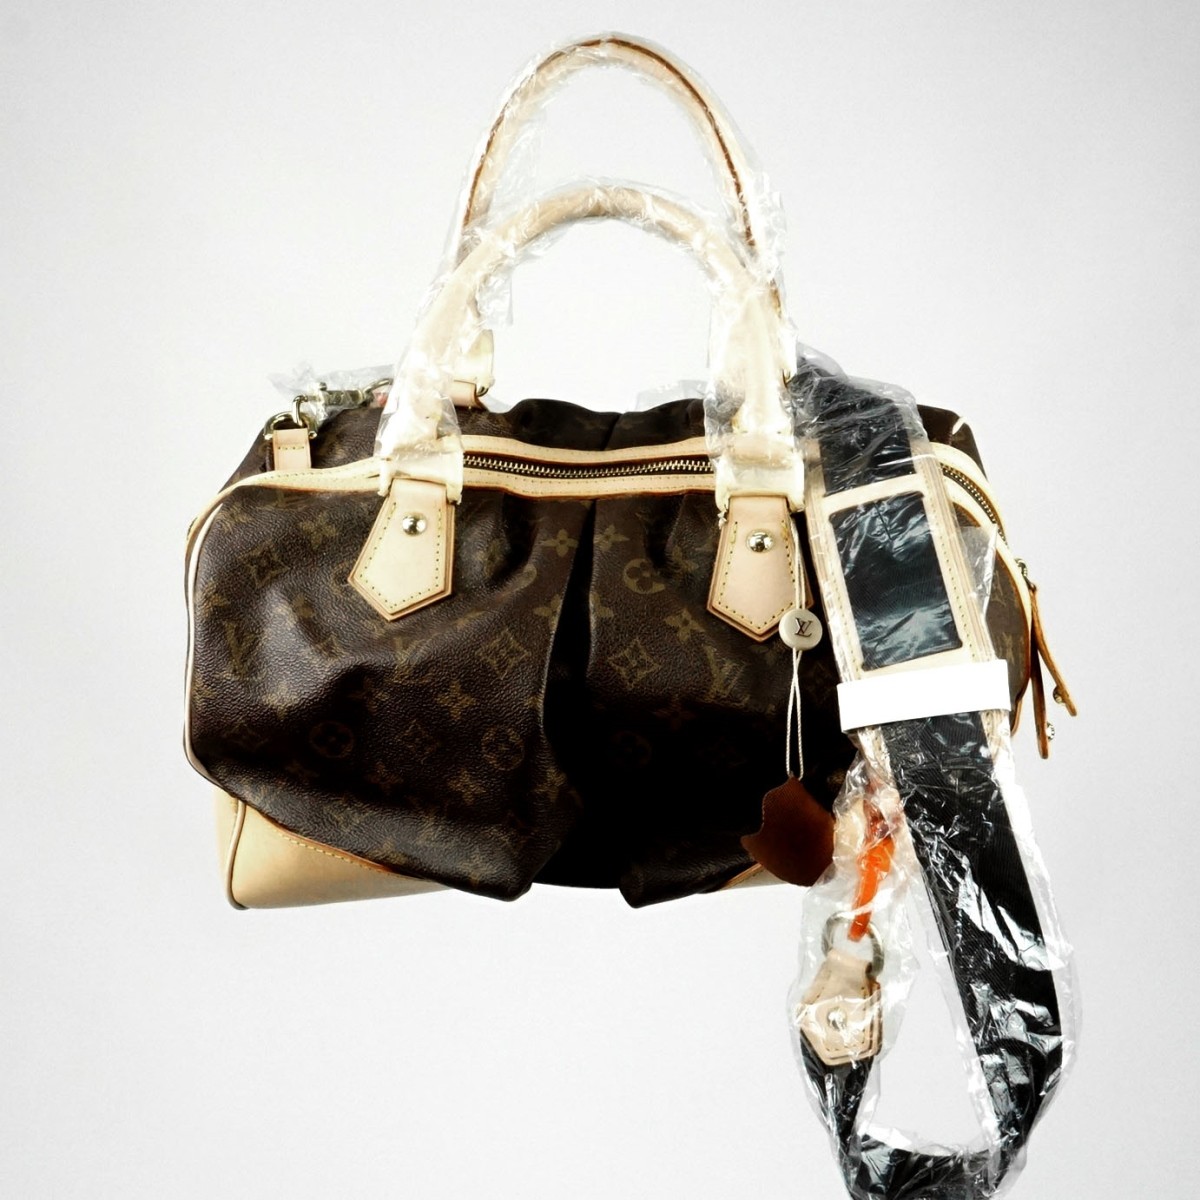 Replica Louis Vuitton Handbag